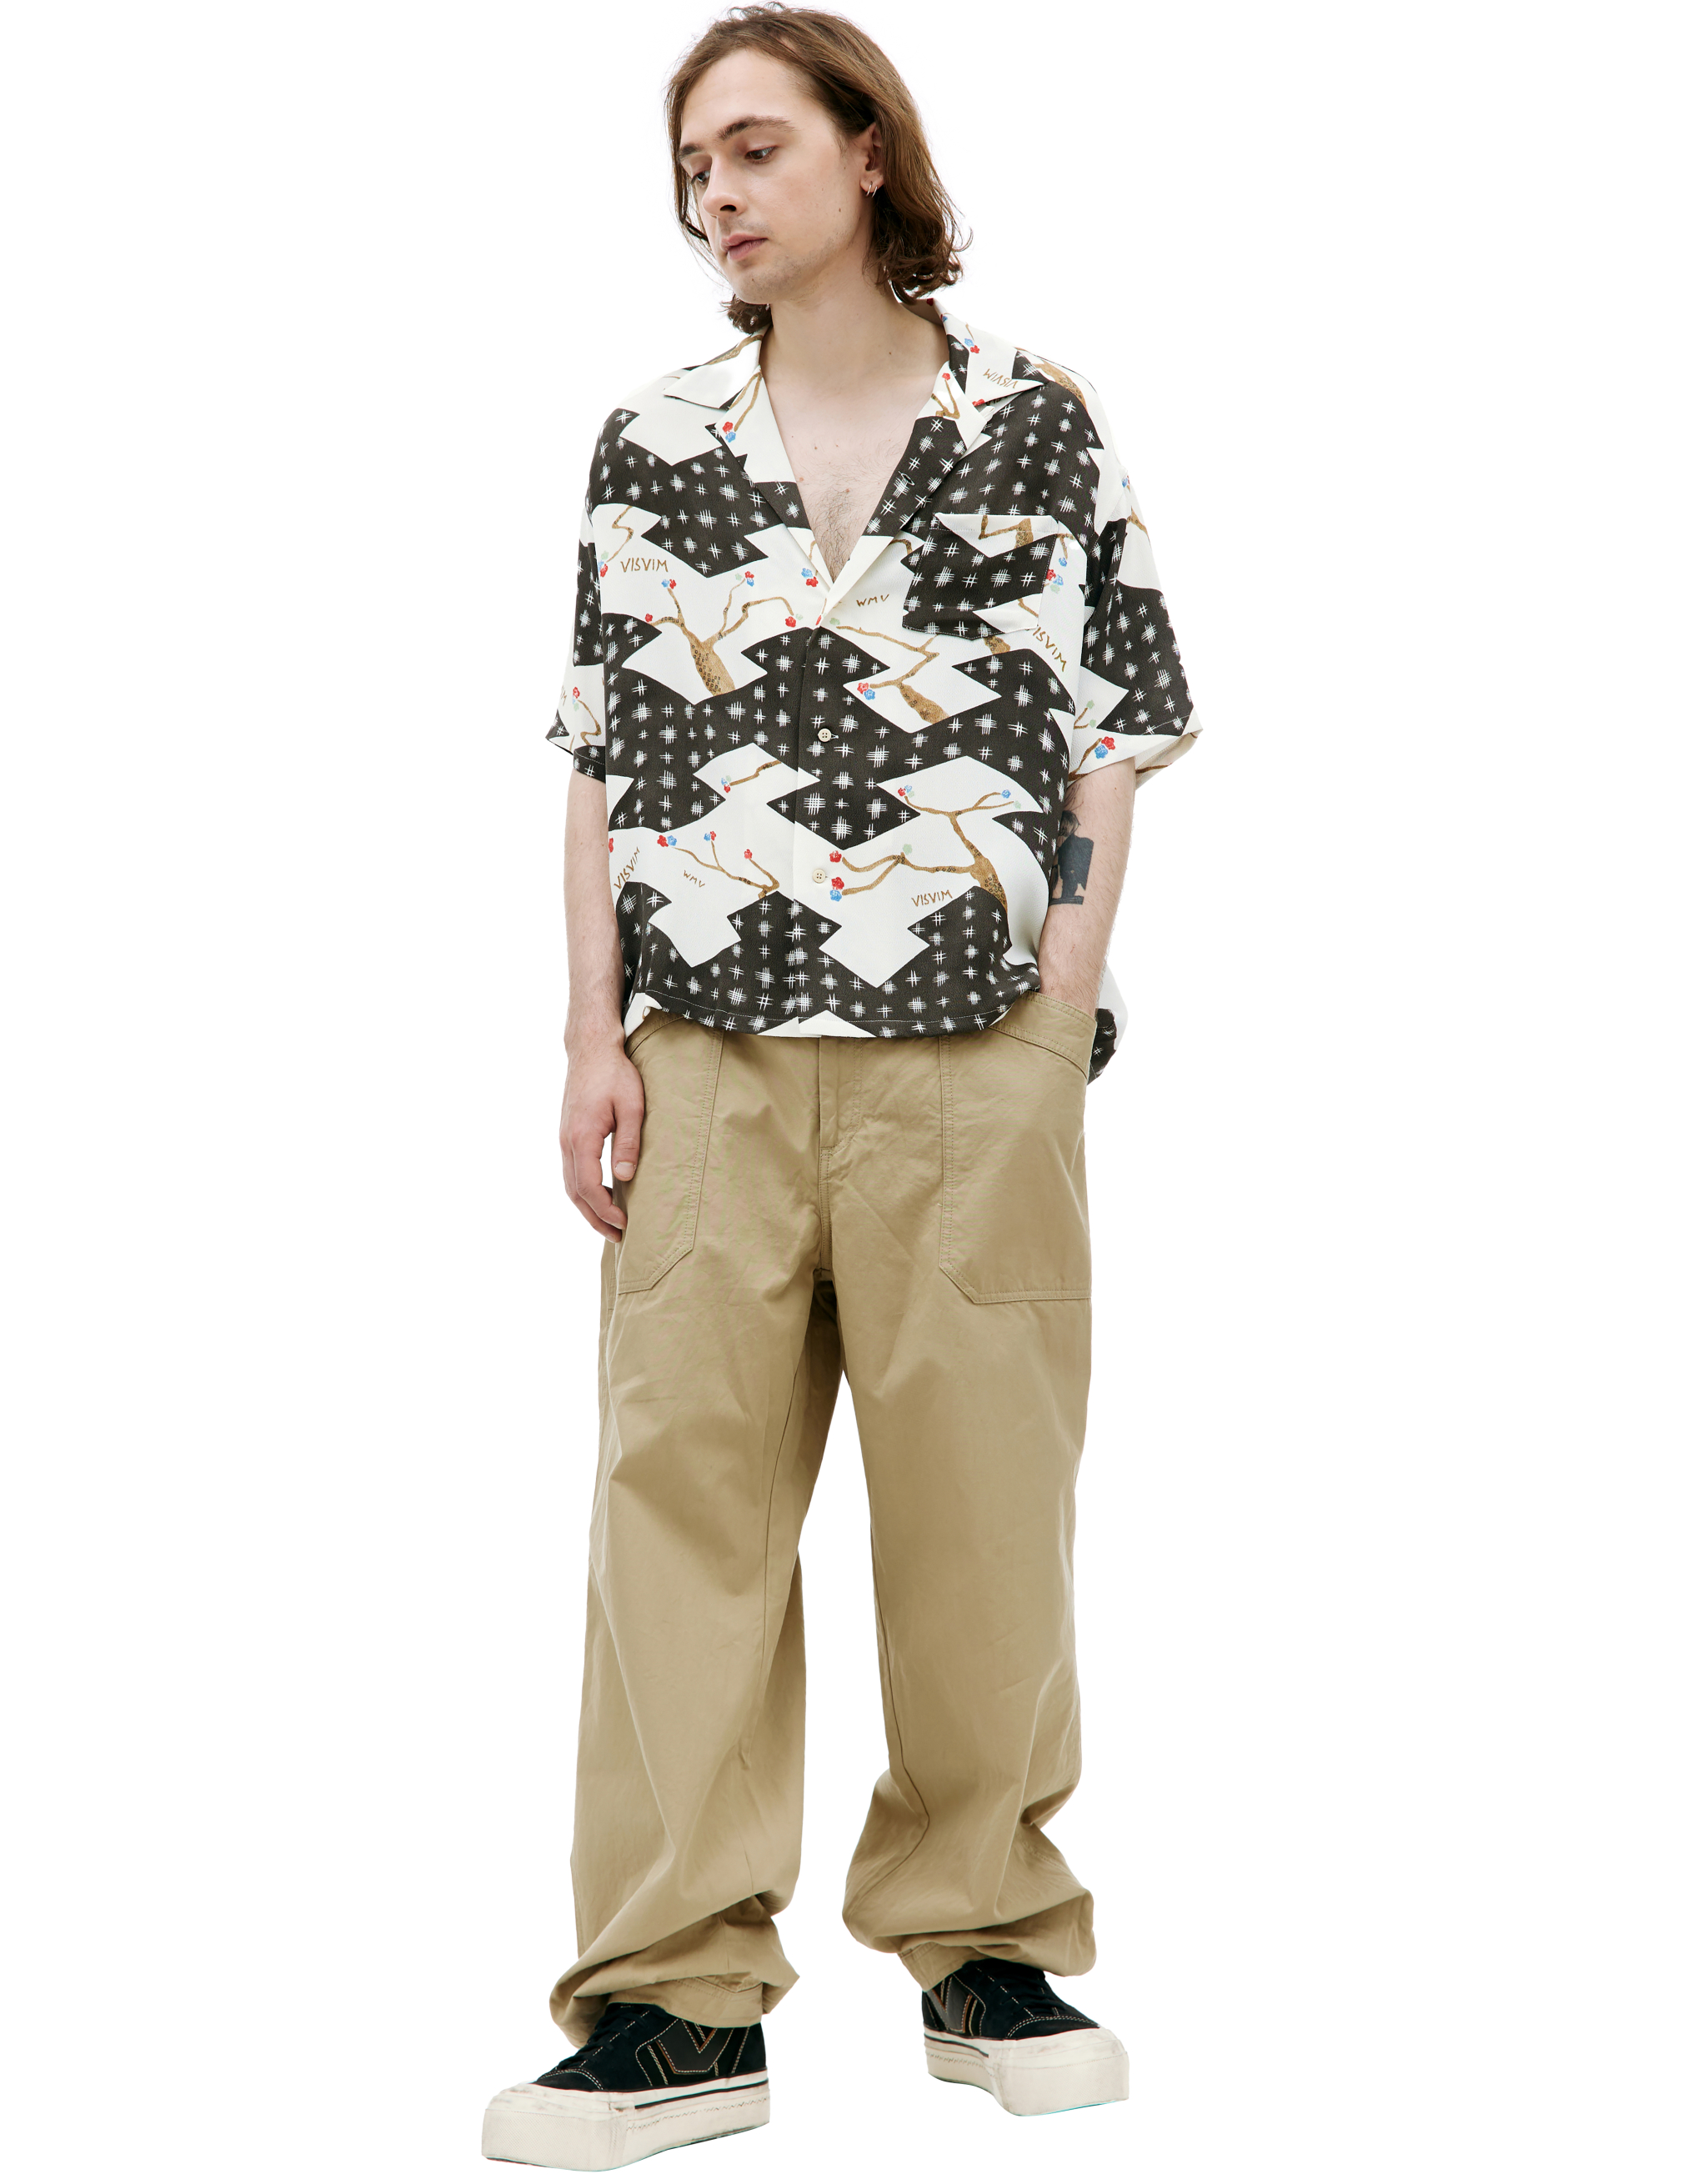 Шелковая рубашка Crosby с монопринтом visvim 0123105011017, размер 3